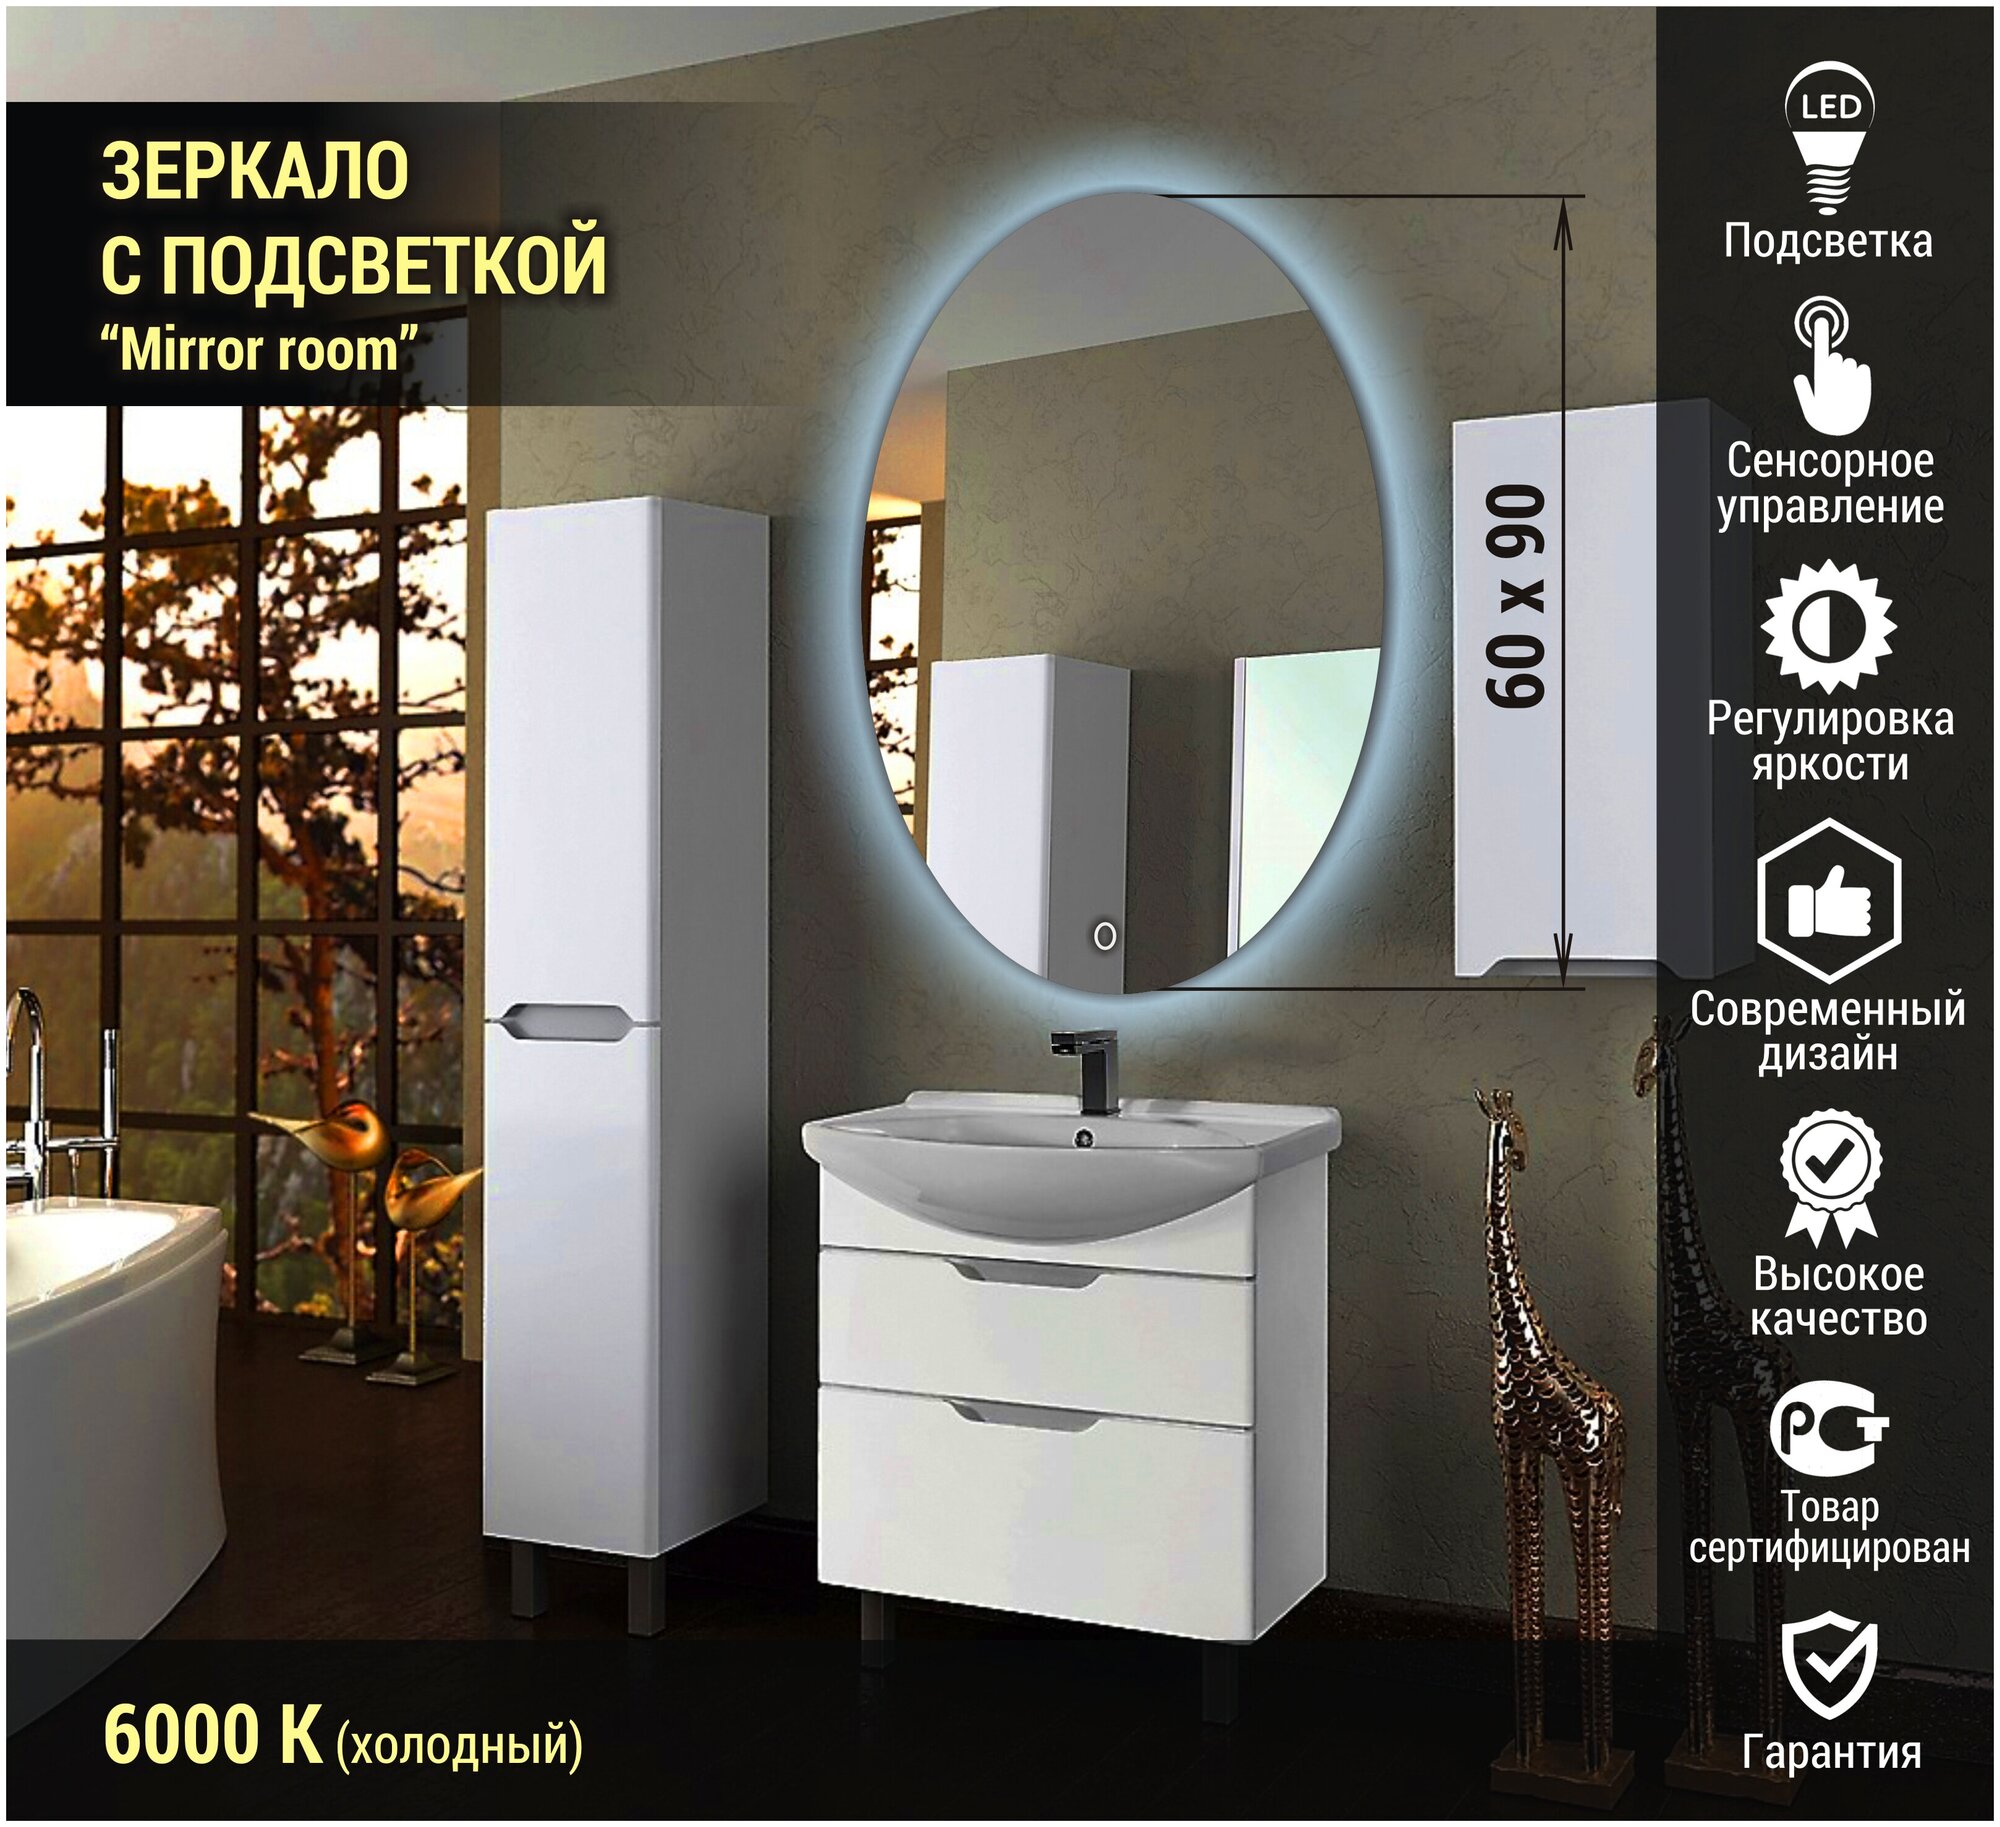 Зеркало для ванной овальное с LED подсветкой 6000К (холодный свет) размер 60 на 90 см.